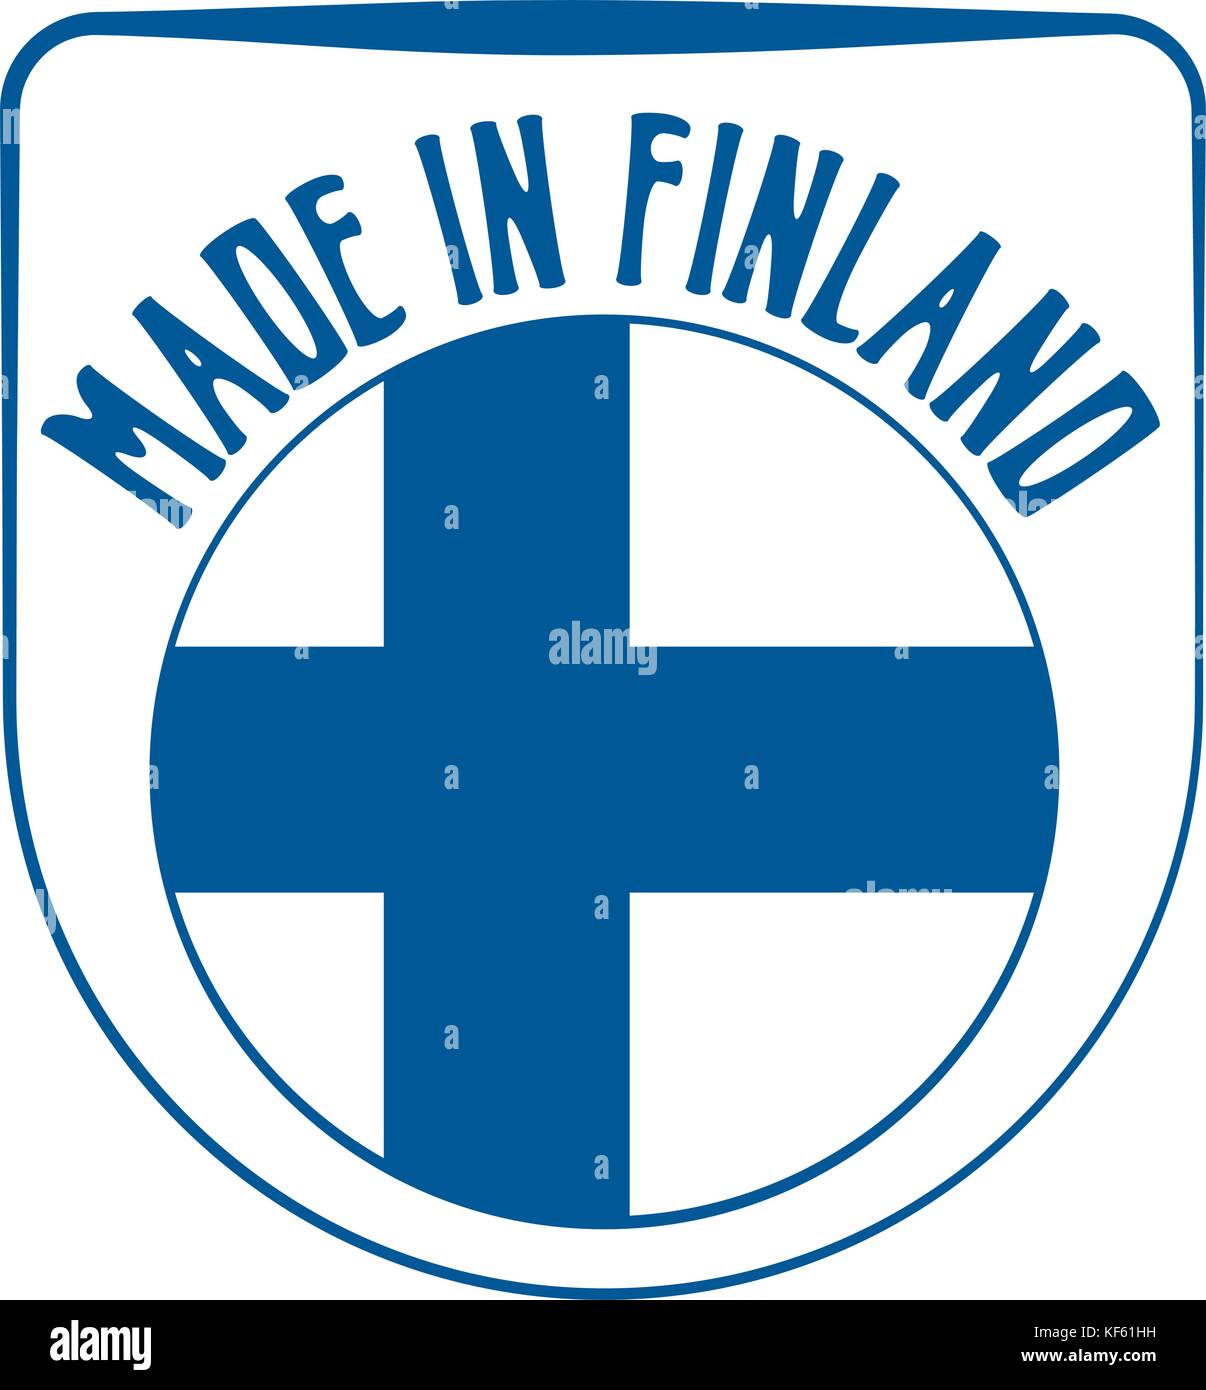 Realizzati in Finlandia segno Illustrazione Vettoriale